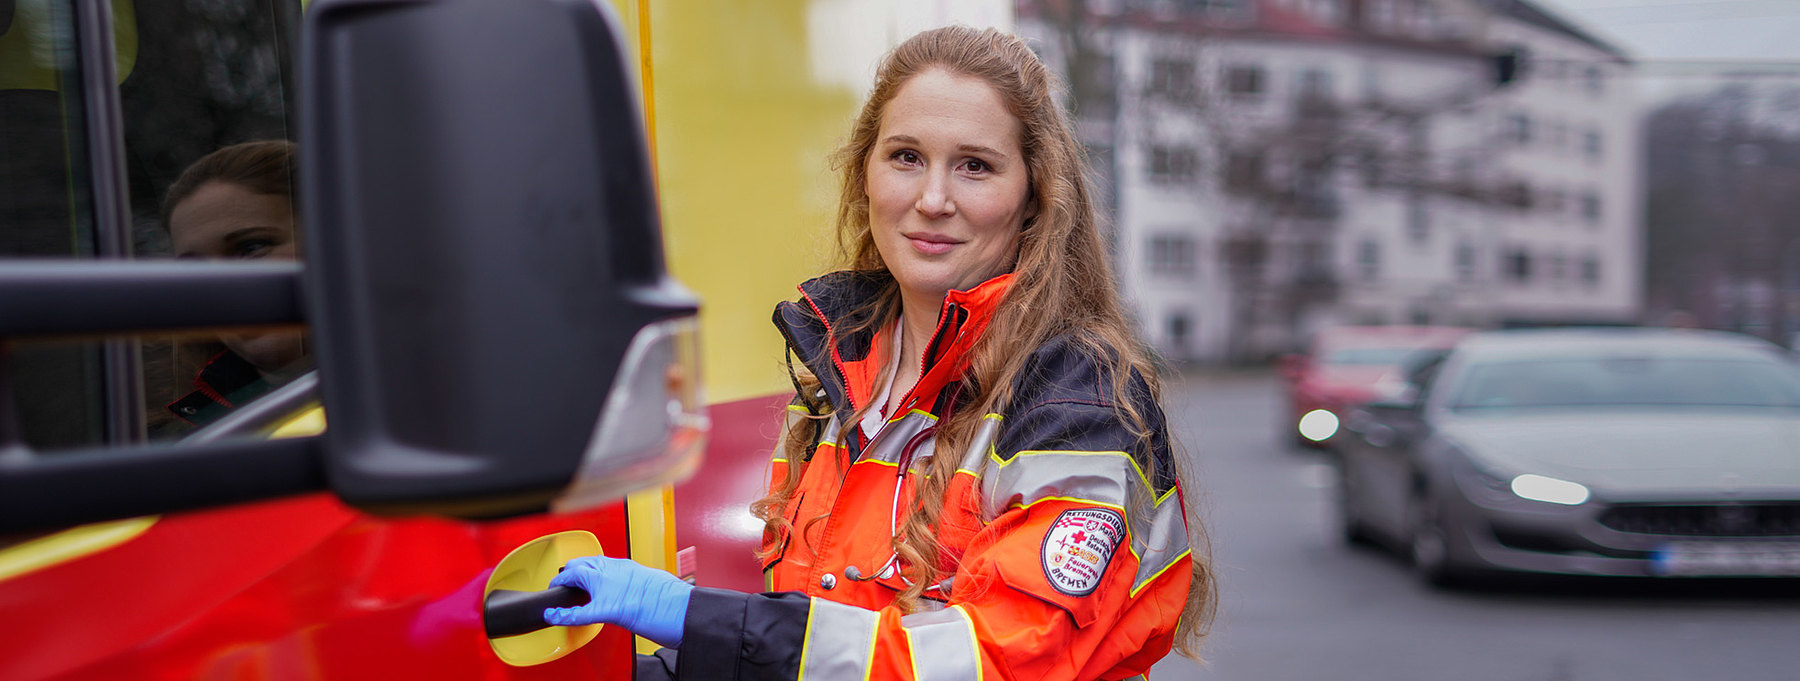 Notfallsanitäterin neben einem Rettungswagen